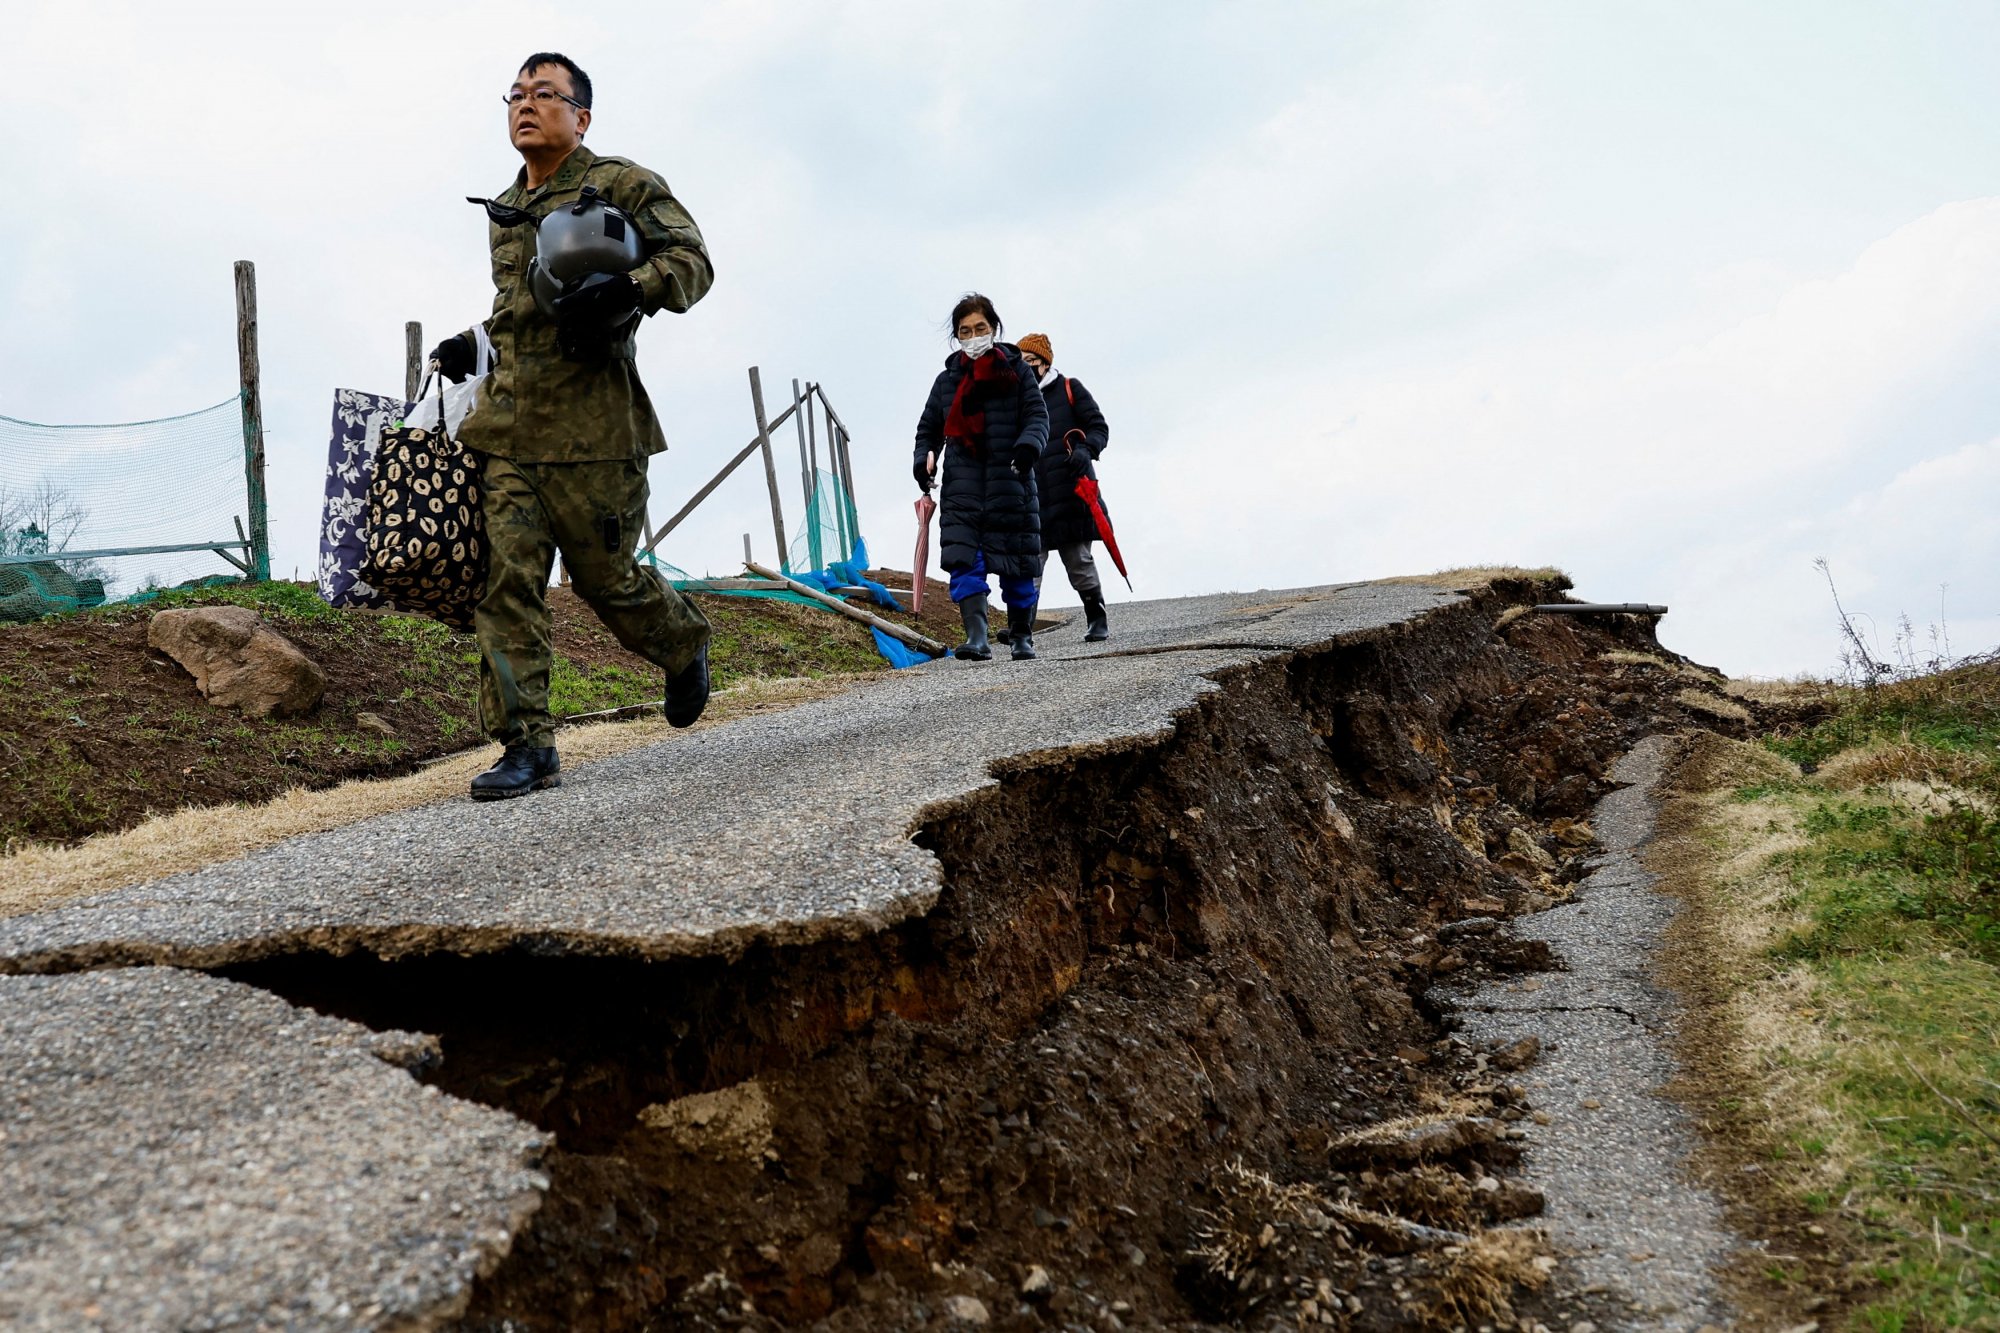 Ιαπωνία: Σεισμός μεγέθους 5,9 βαθμών πλήττει την κεντρική χώρα